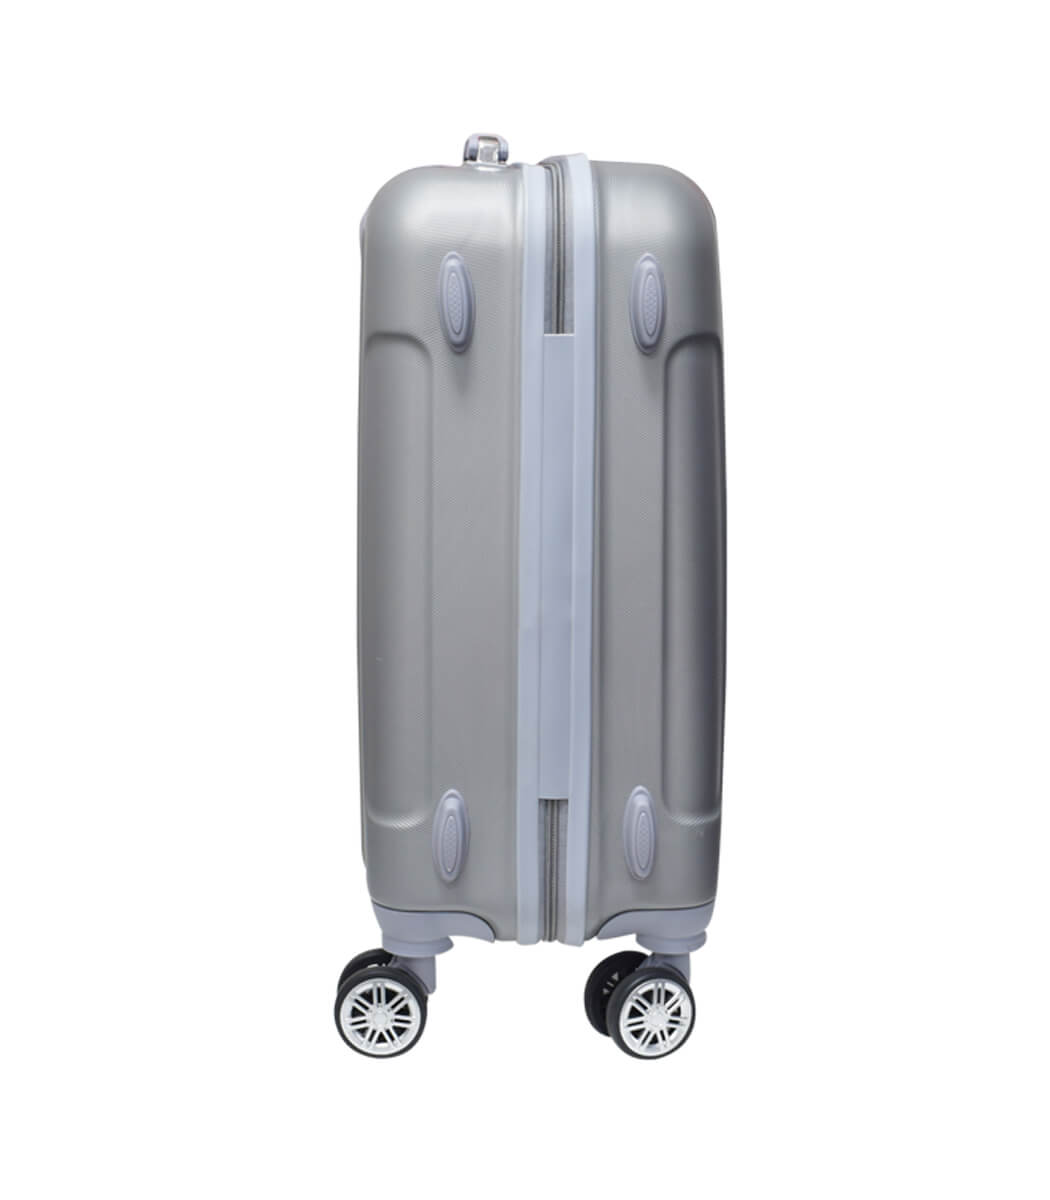 HTL85 – 20inch – Hard Trolley Luggage